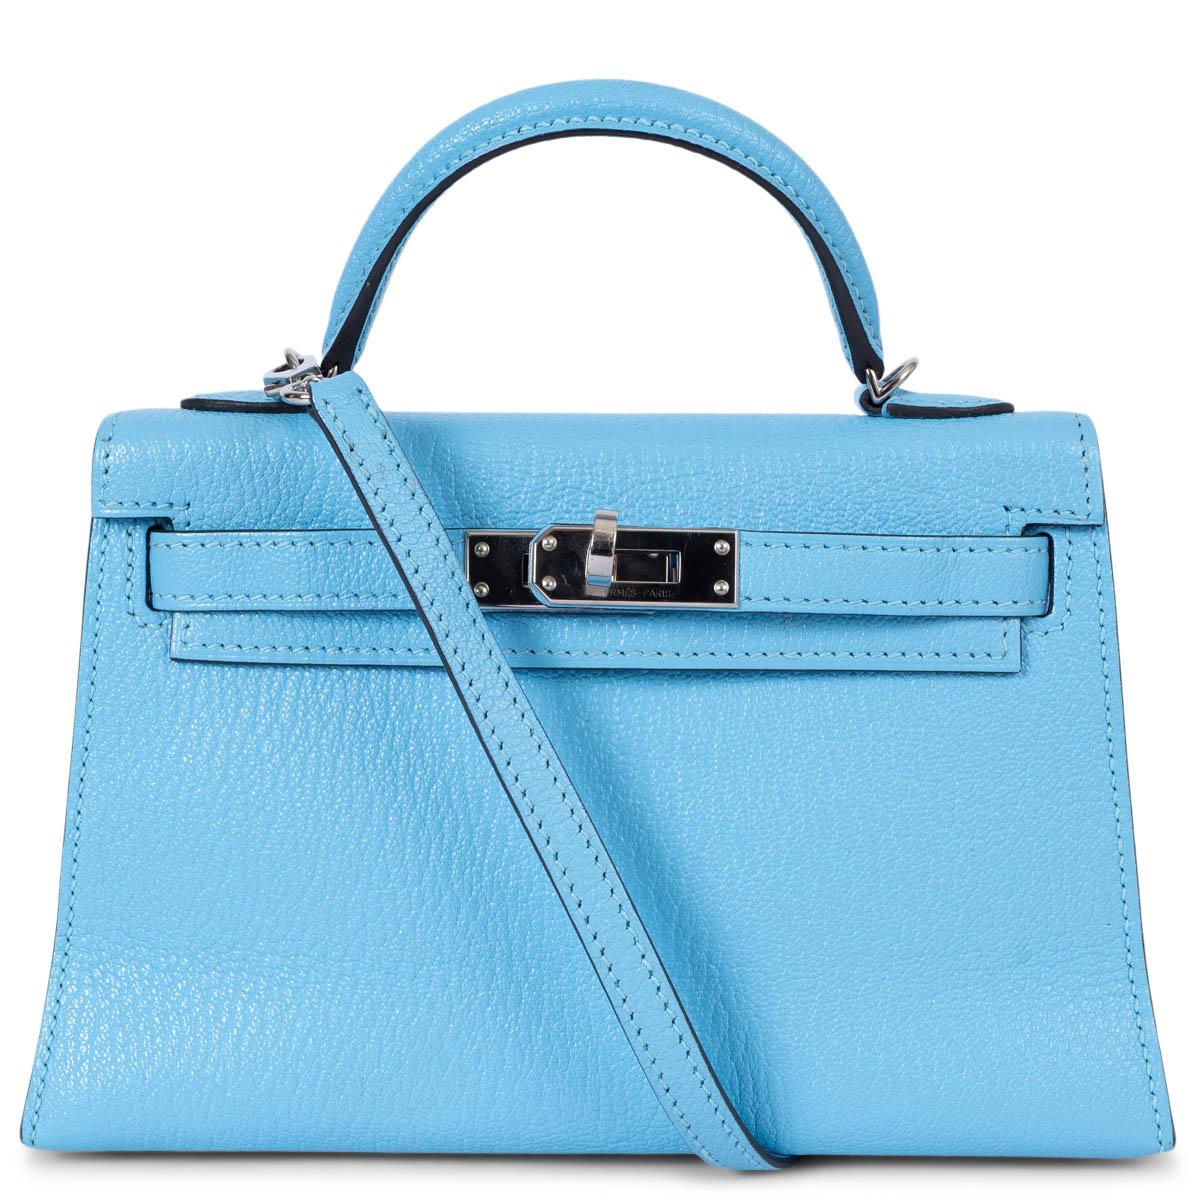 HERMES Celeste blue Mysore leather MINI KELLY 20 SELLIER Bag Phw